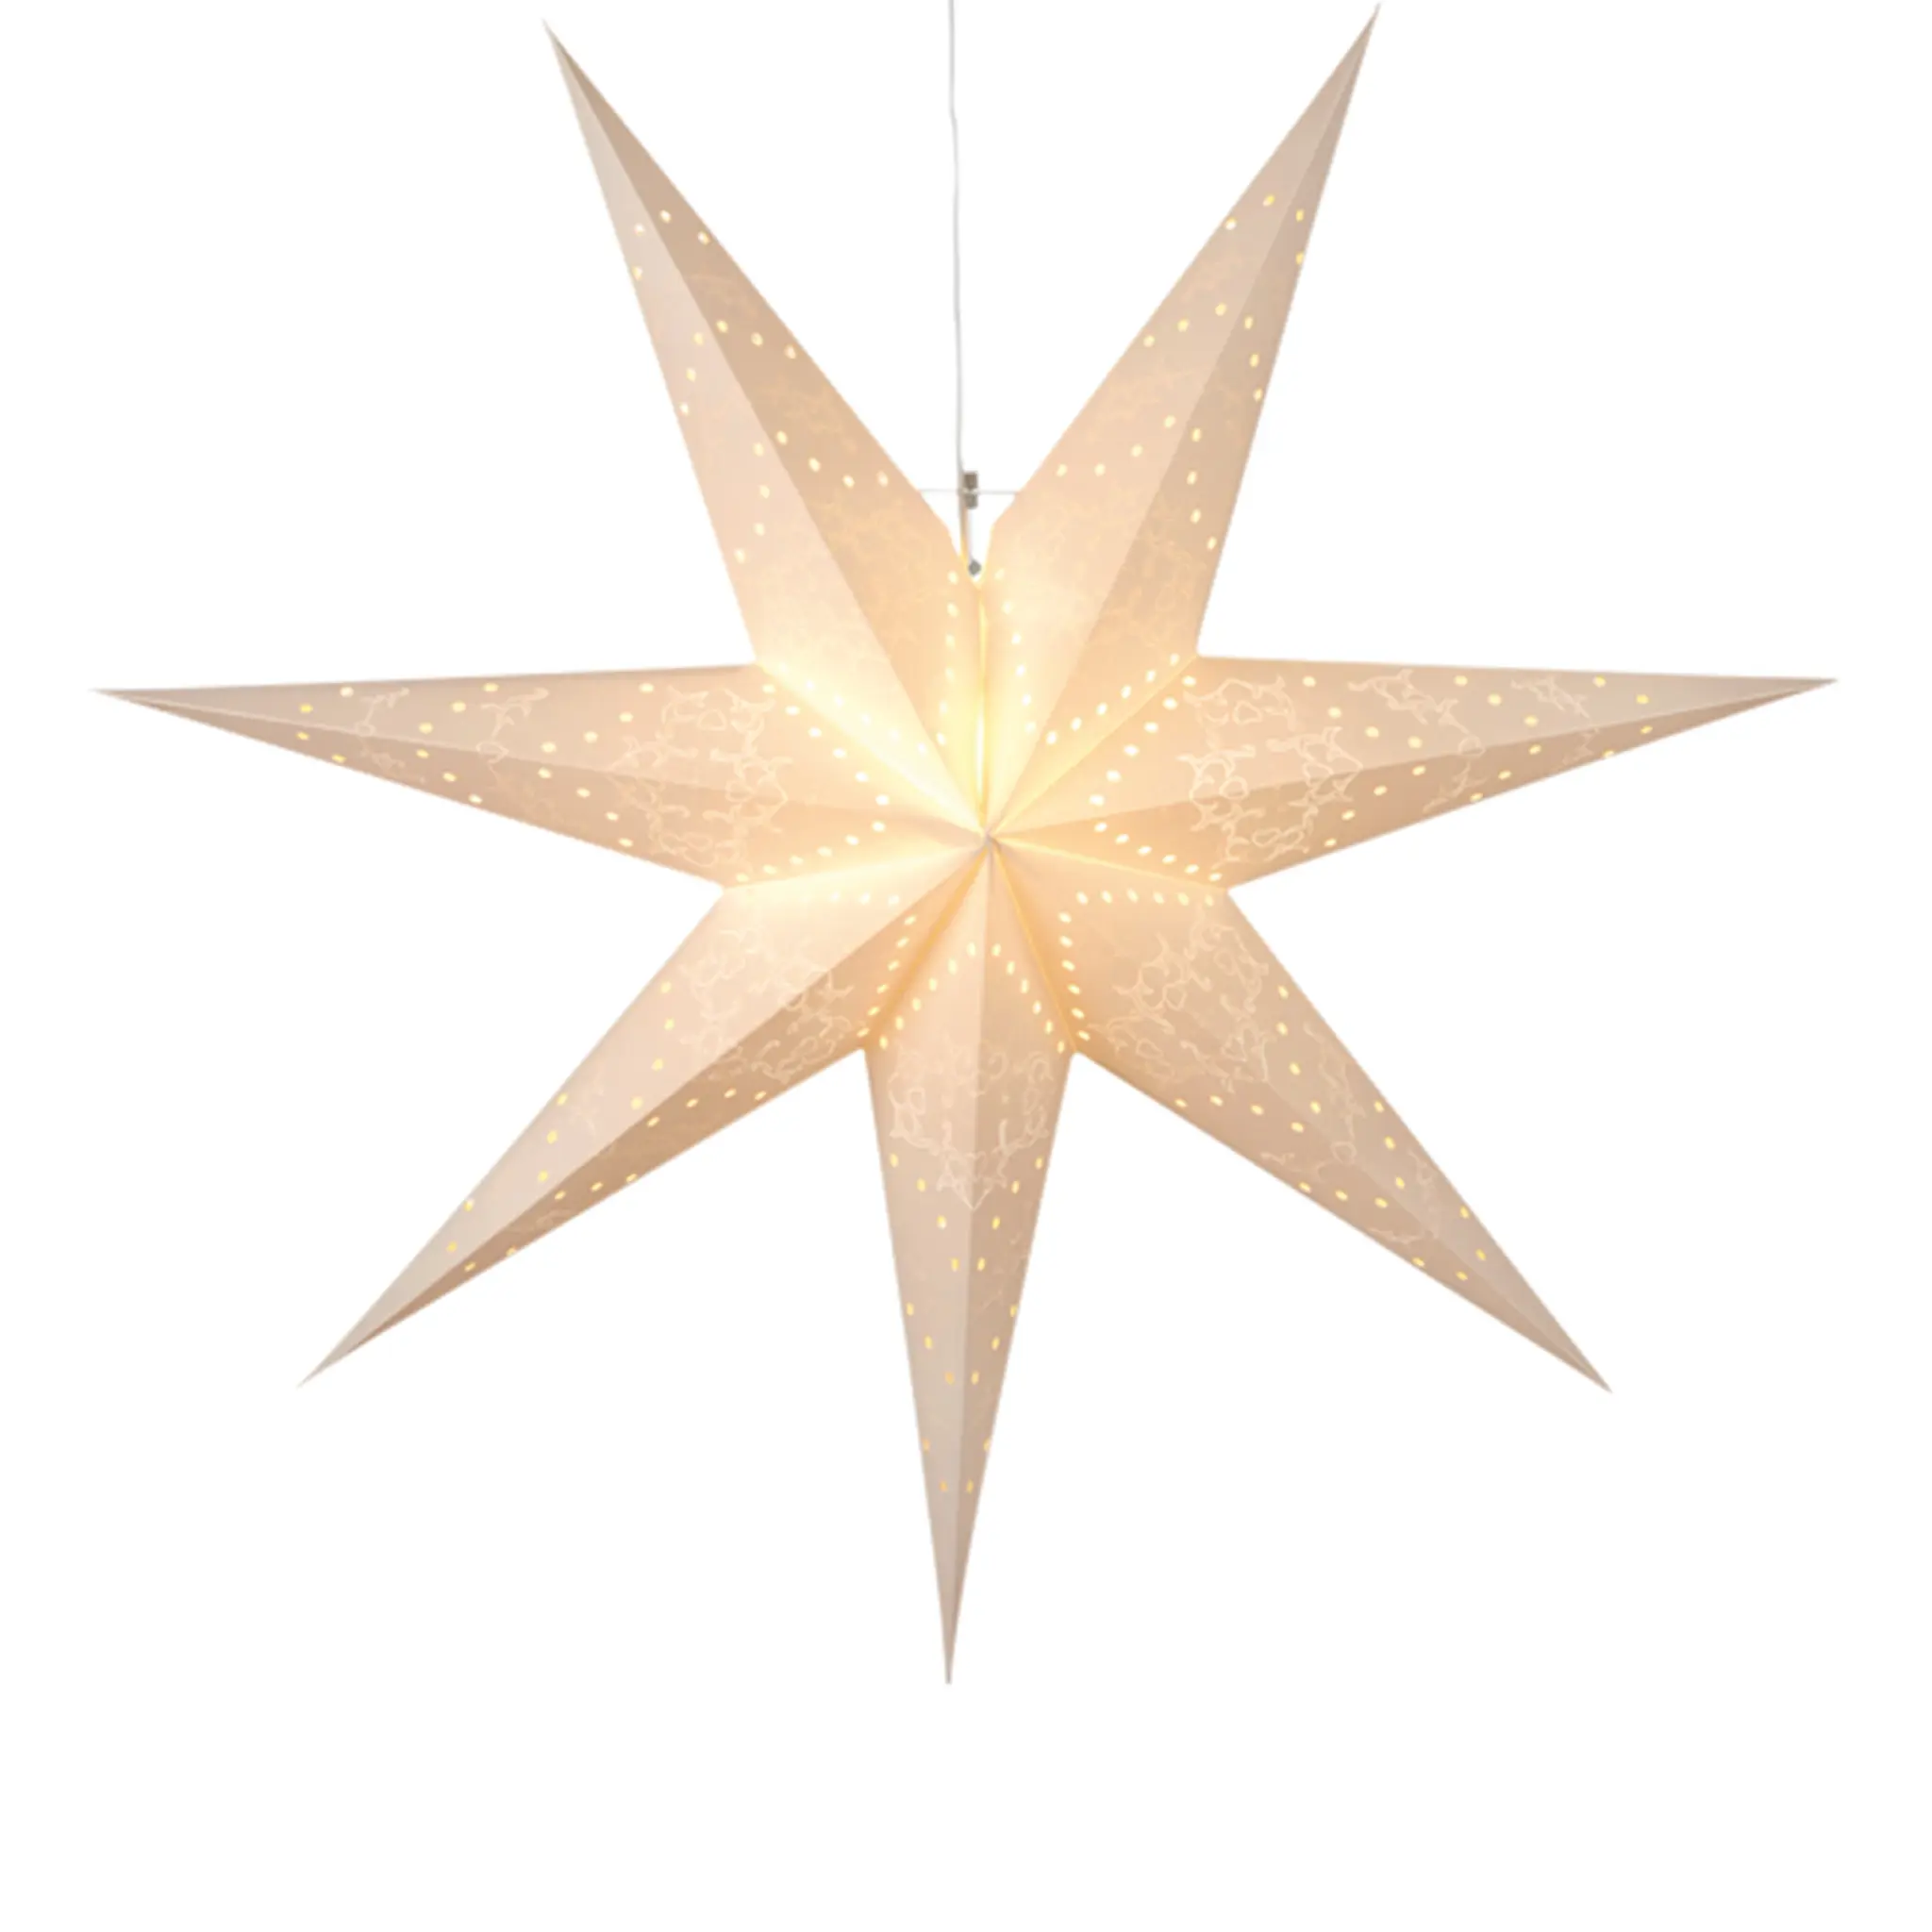 Star Trading Sensy Pappersstjärna 70 cm Vit